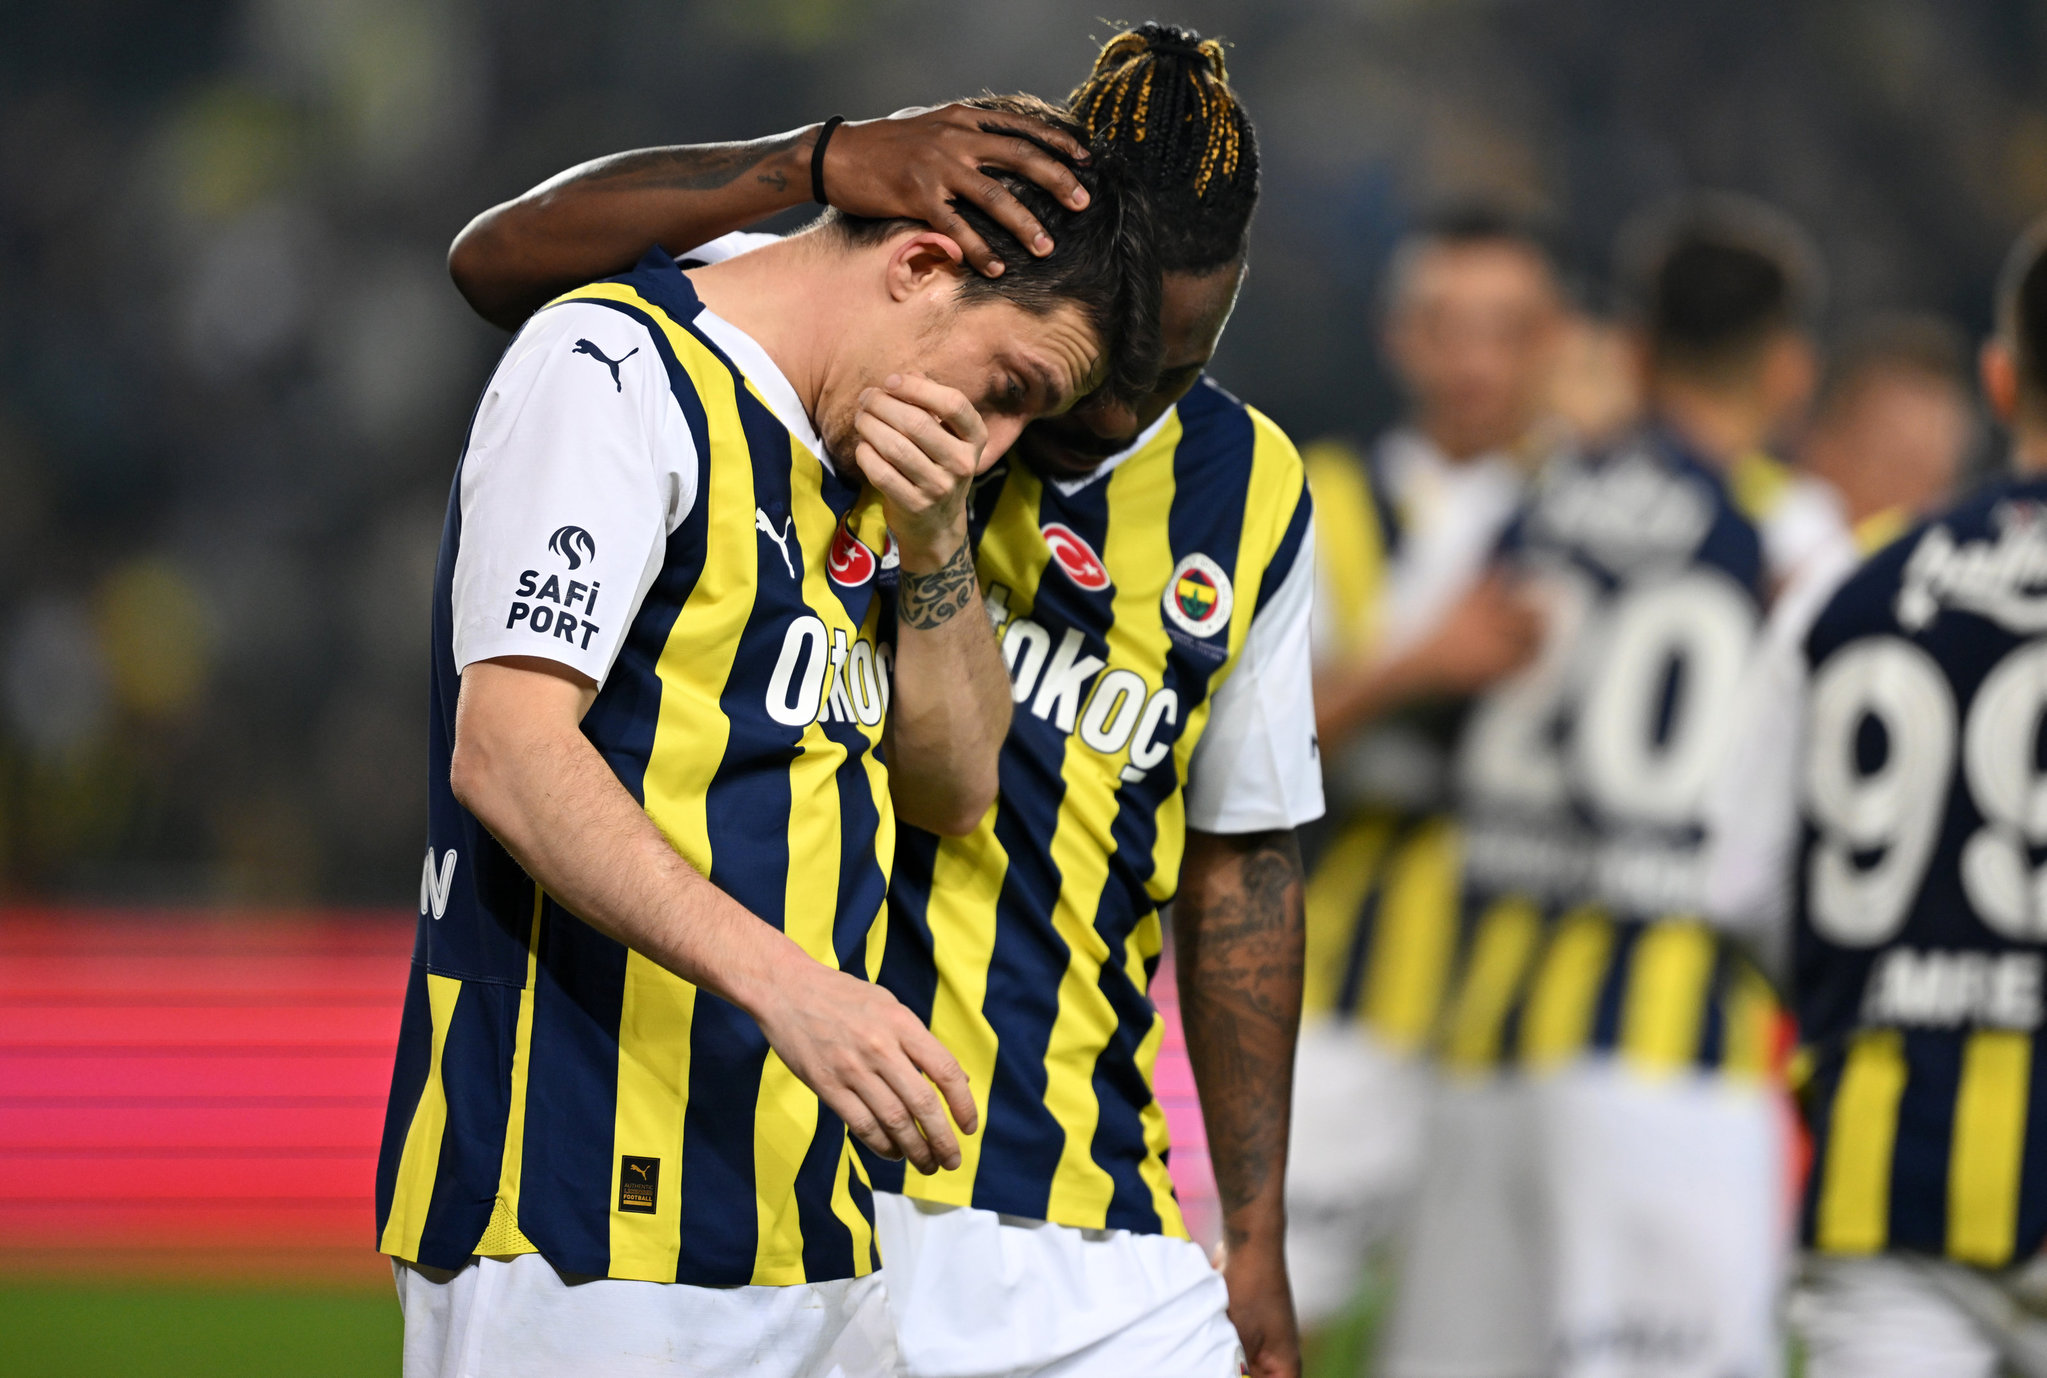 TRANSFER HABERİ: Fenerbahçe’de şaşırtan ayrılık! Bonservis ücreti 35 milyon Euro